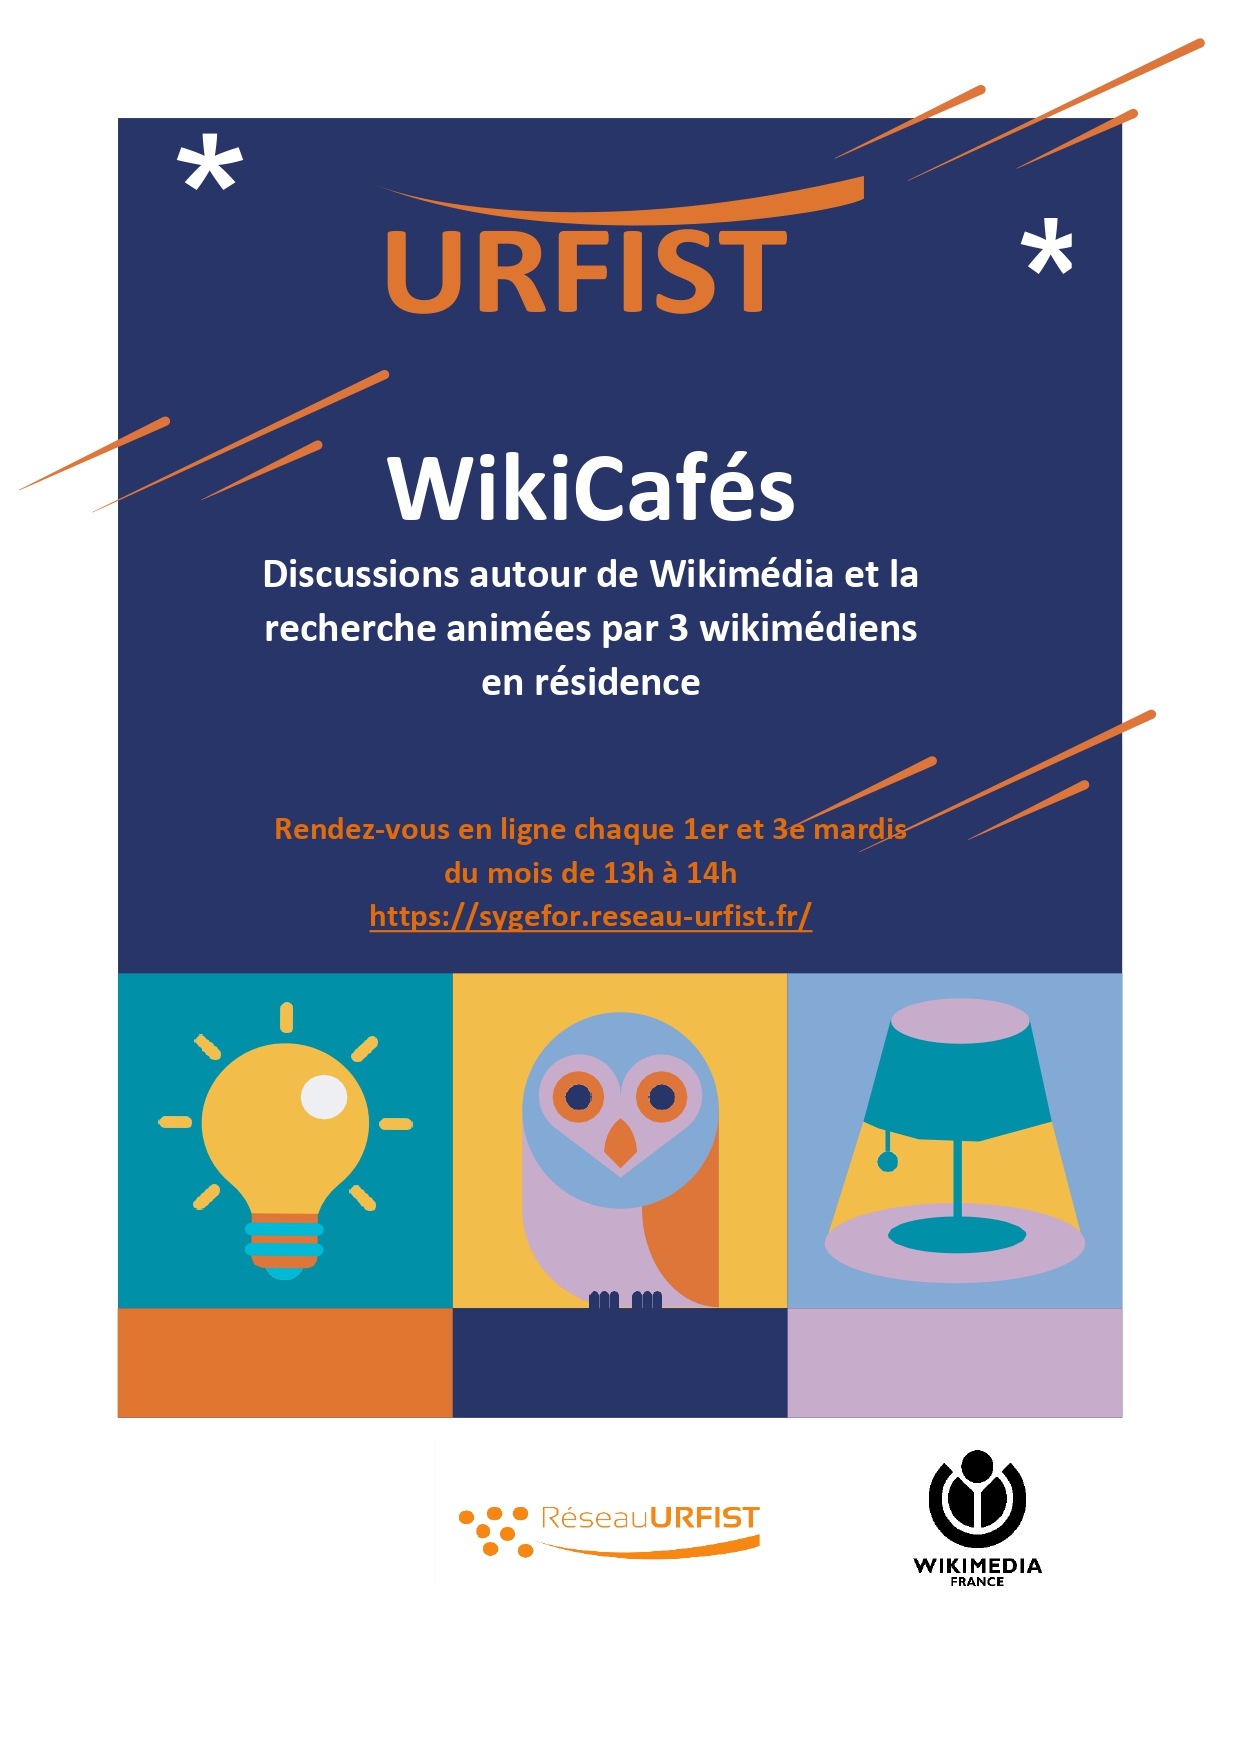 Affiche des WikiCafés : discussions autour de Wikimédia et la recherche par 3 wikimédiens en résidence. Rendez-vous en ligne chaque 1er et 3e mardis du mois de 13h à 14h.